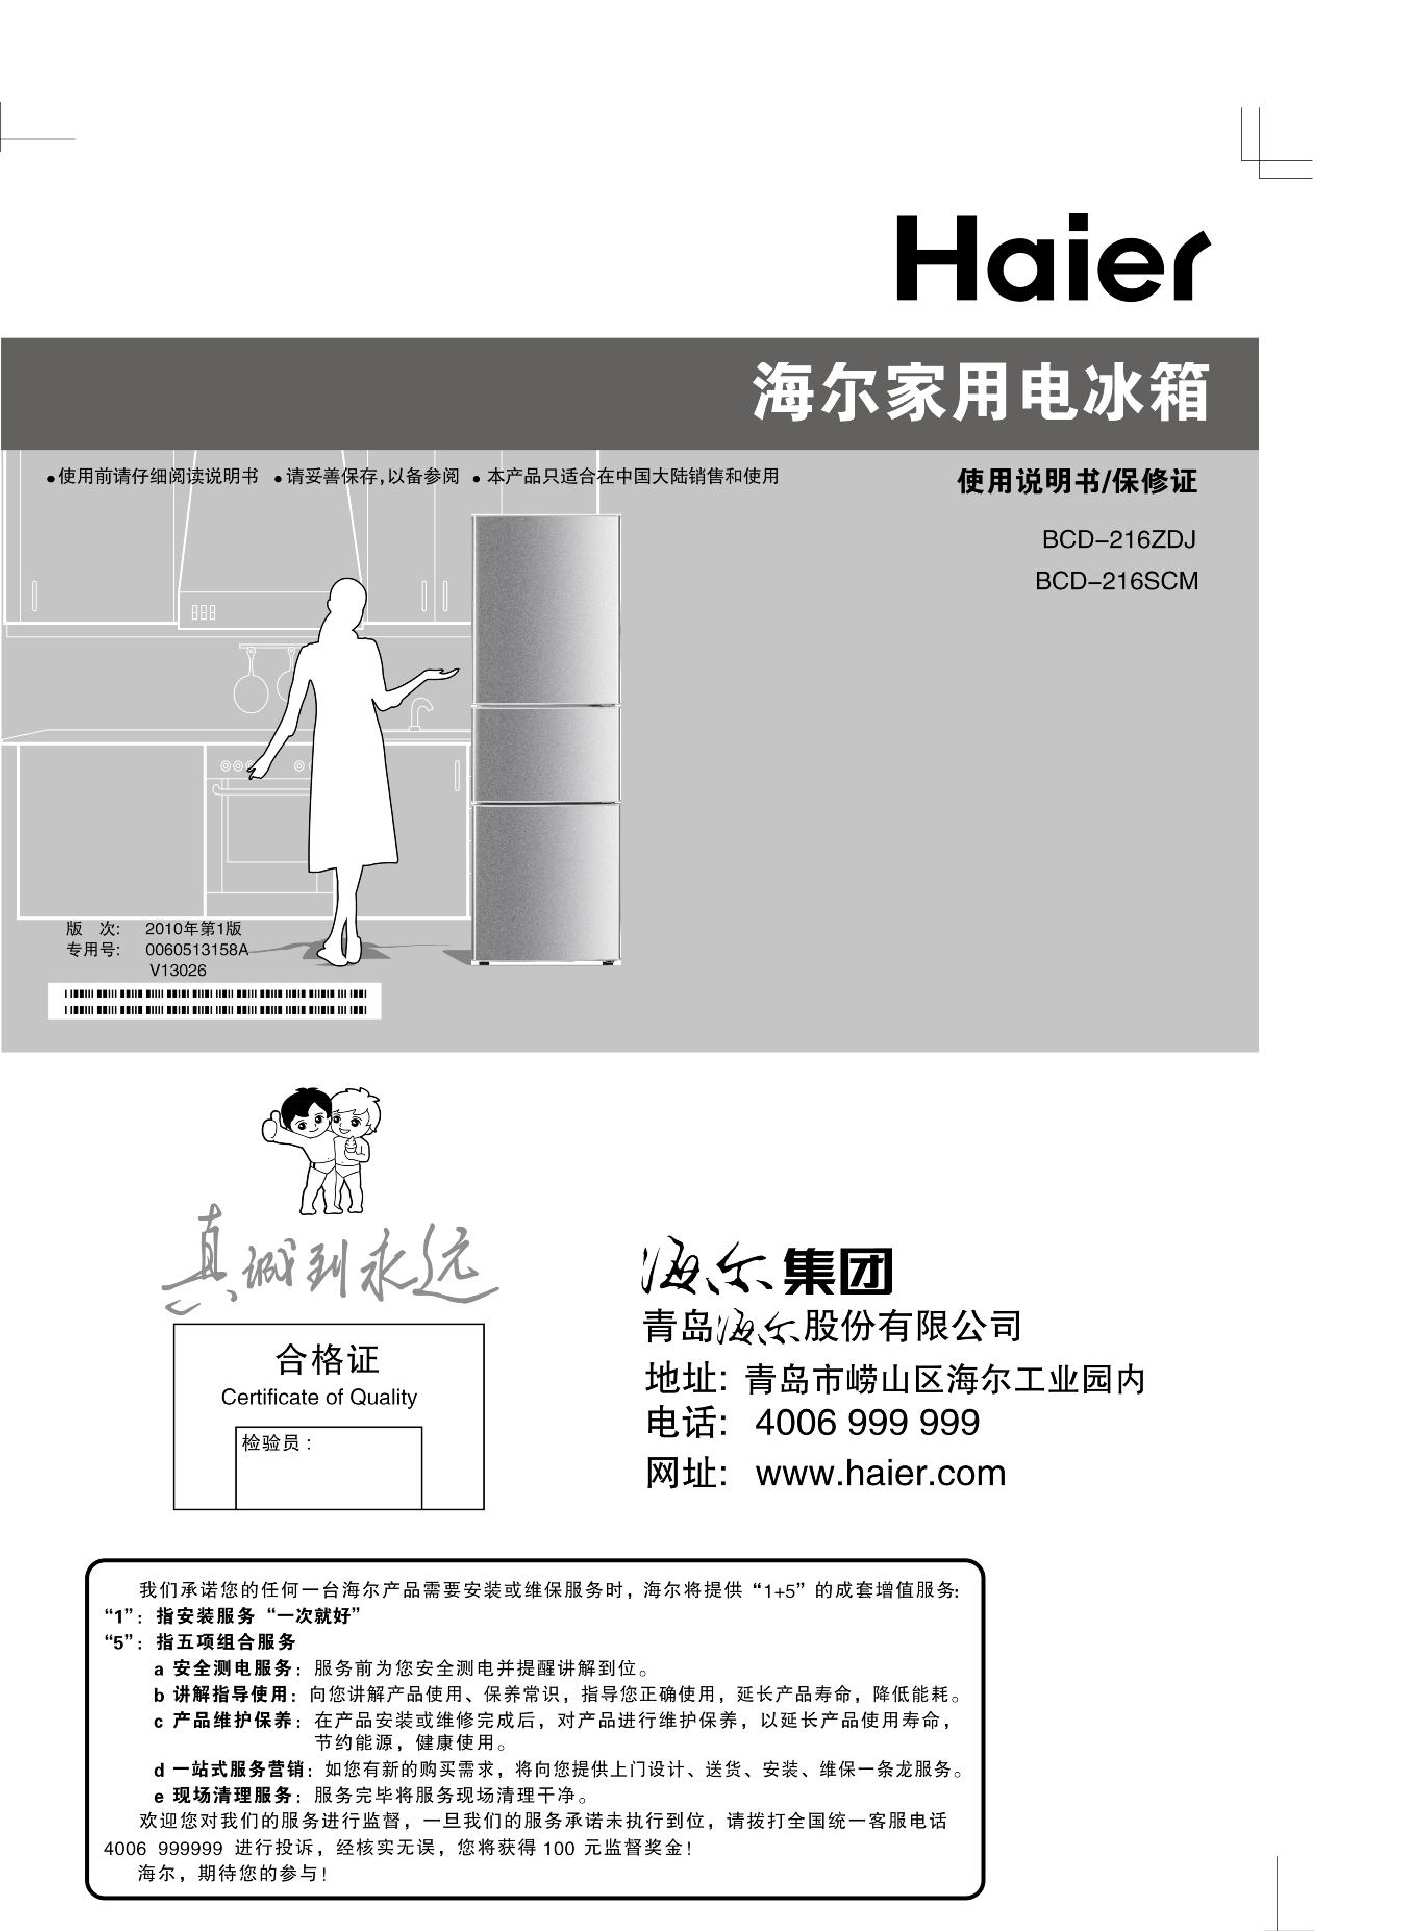 海尔 Haier BCD-216SCM 使用说明书 封面